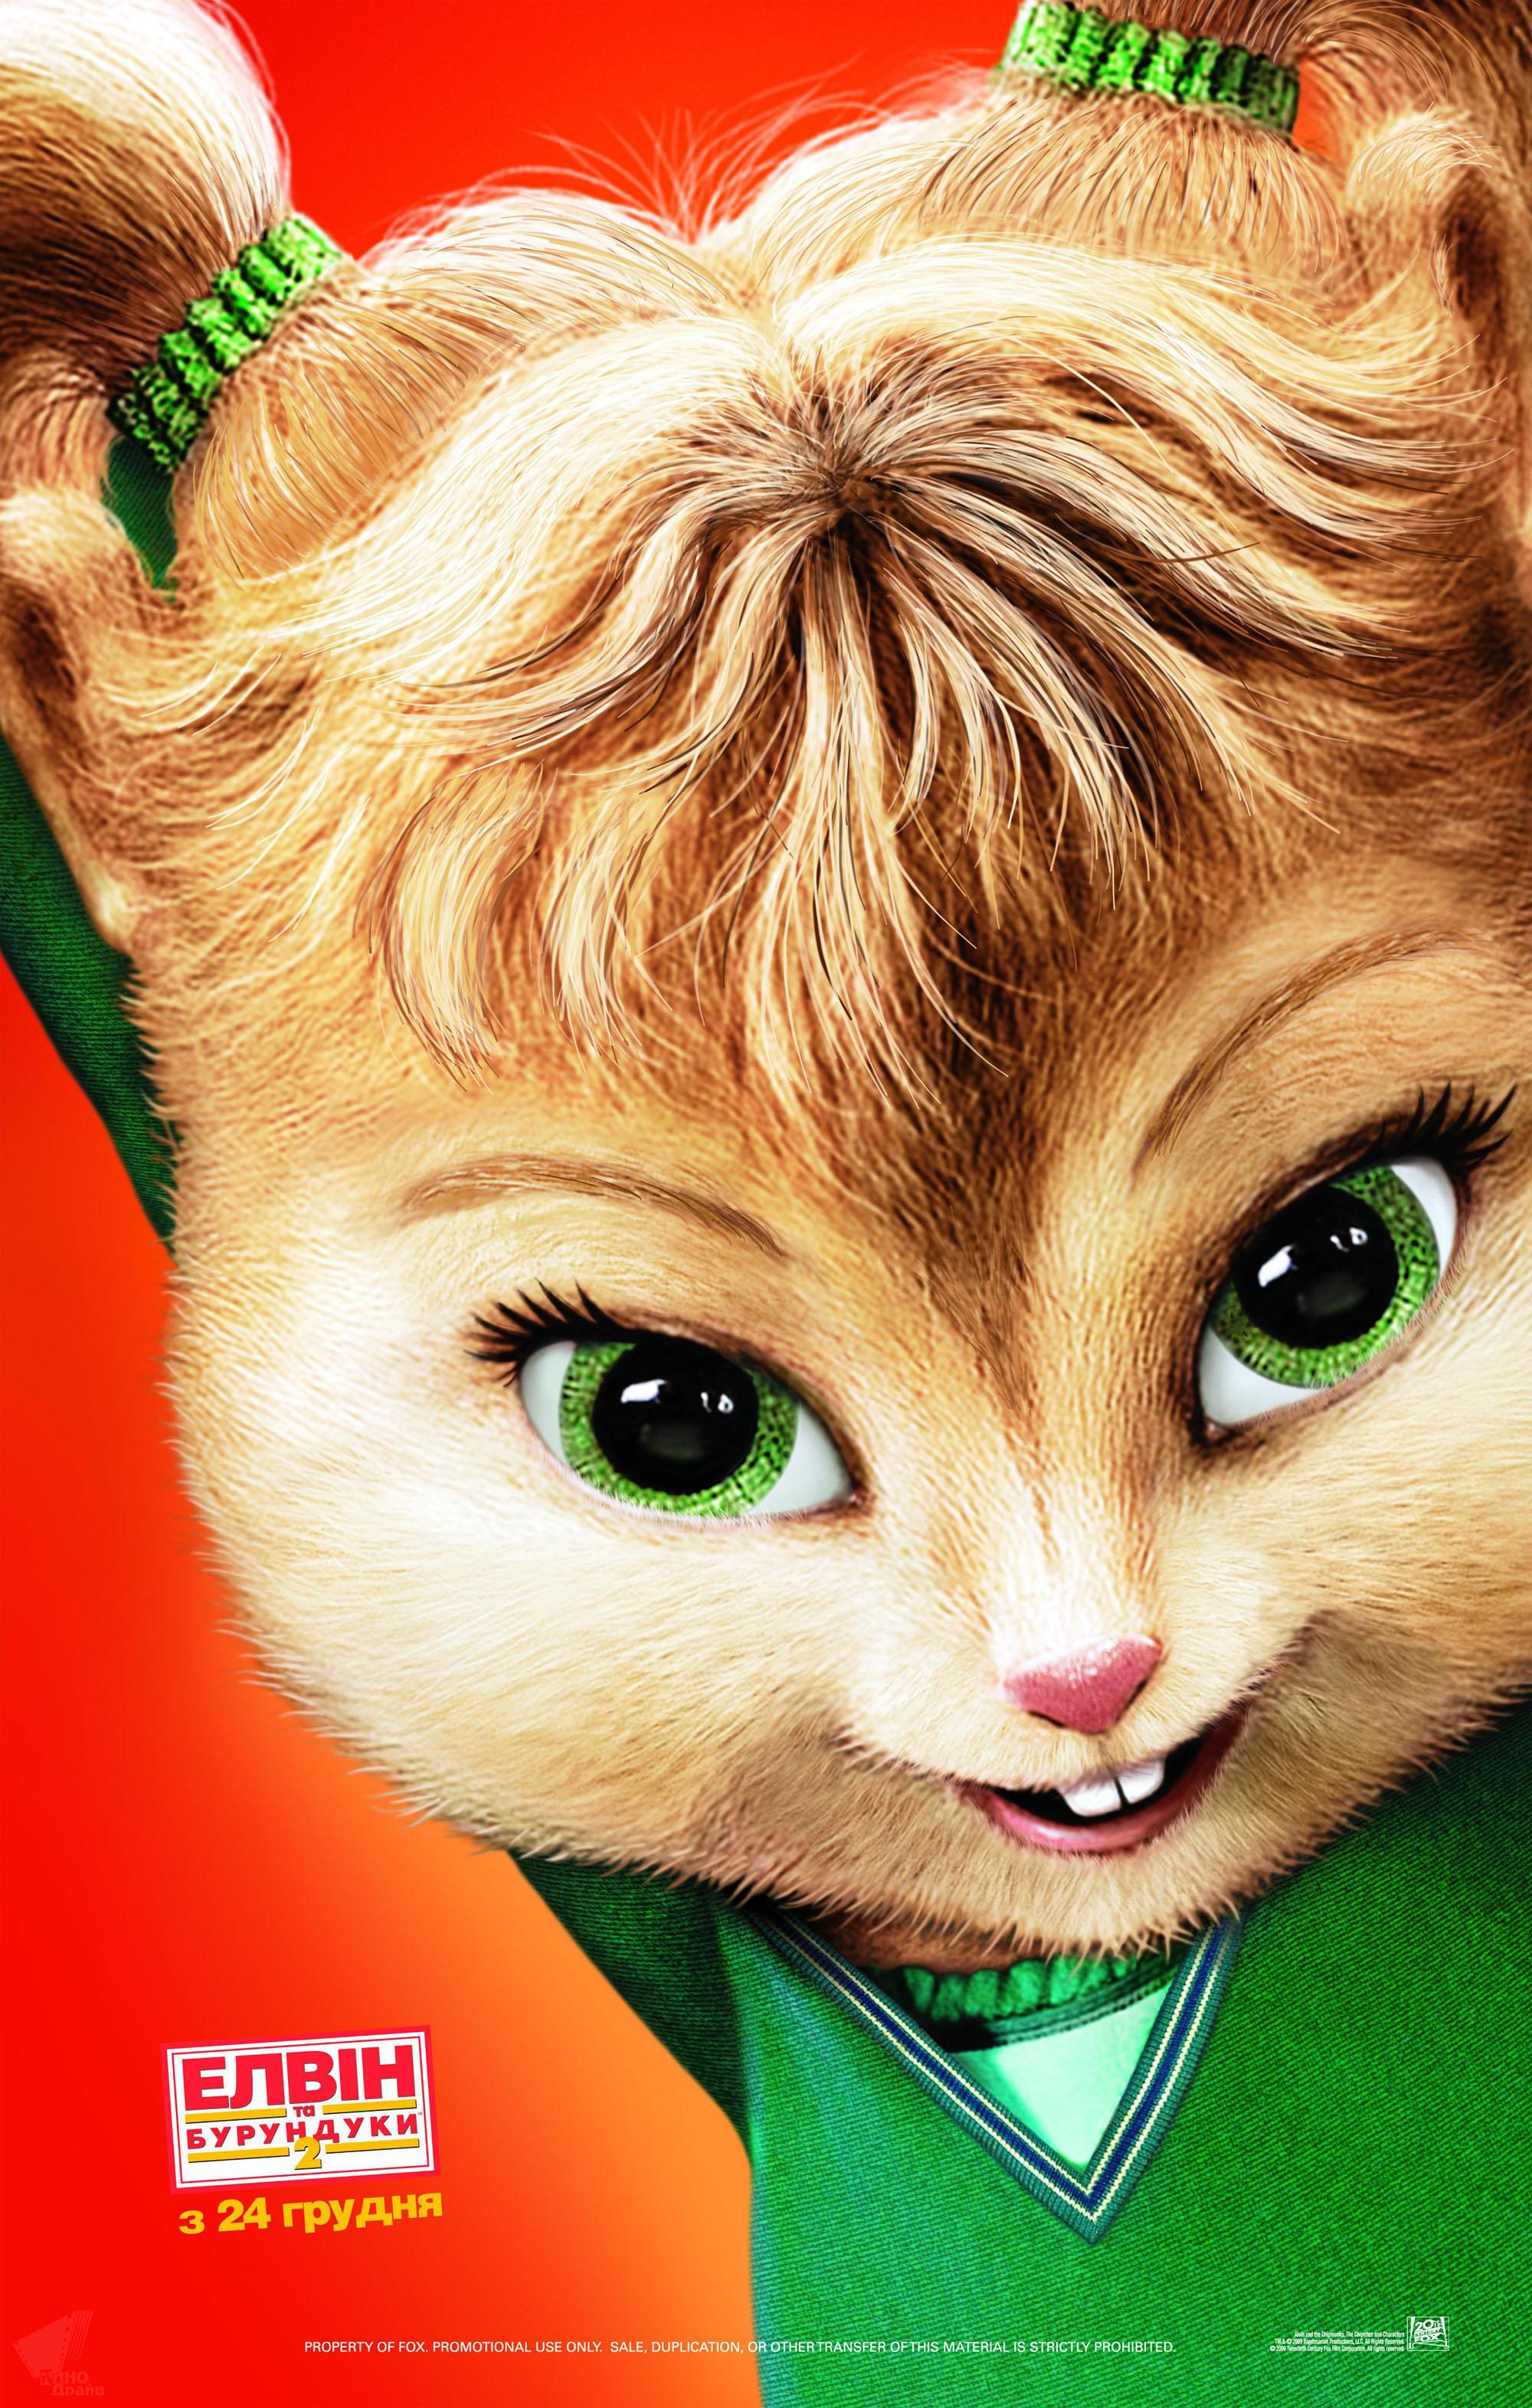 Постер фильма Элвин и бурундуки 2 | Alvin and the Chipmunks: The Squeakquel